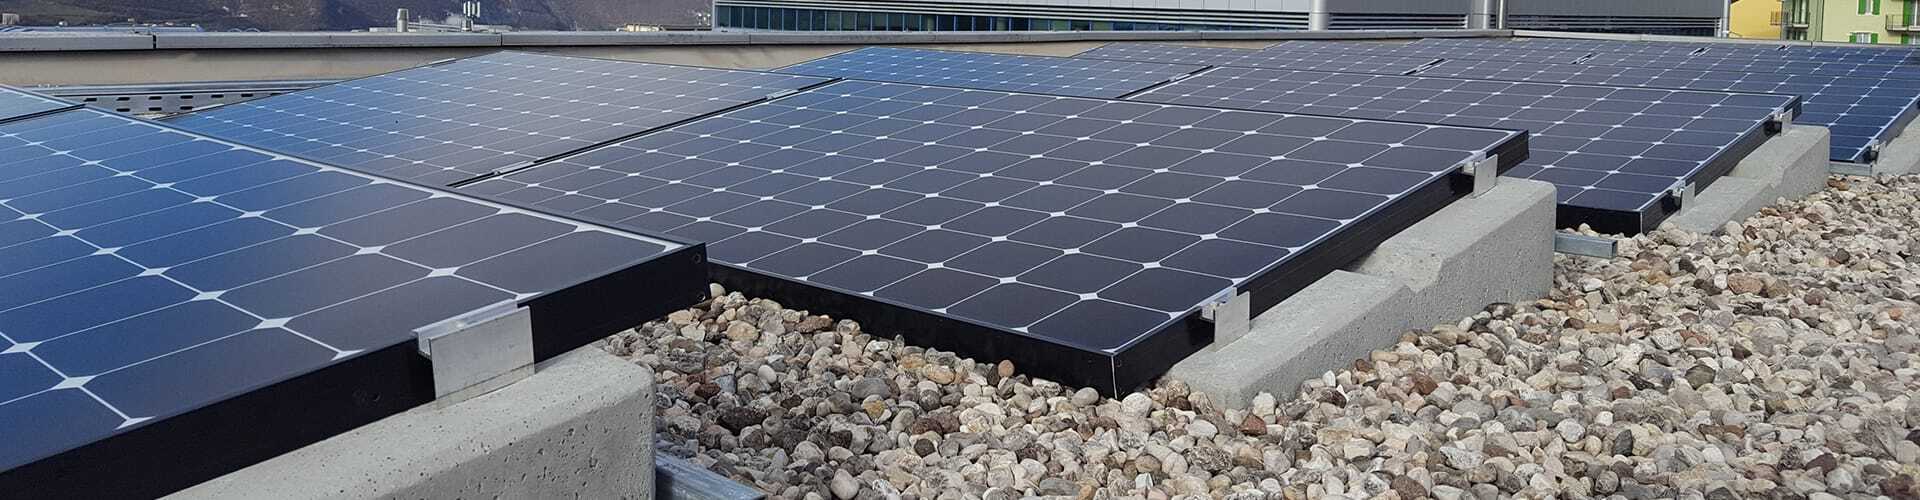 voluntario impuesto Elemental Estructuras para paneles fotovoltaicos en cubierta plana - Sunballast